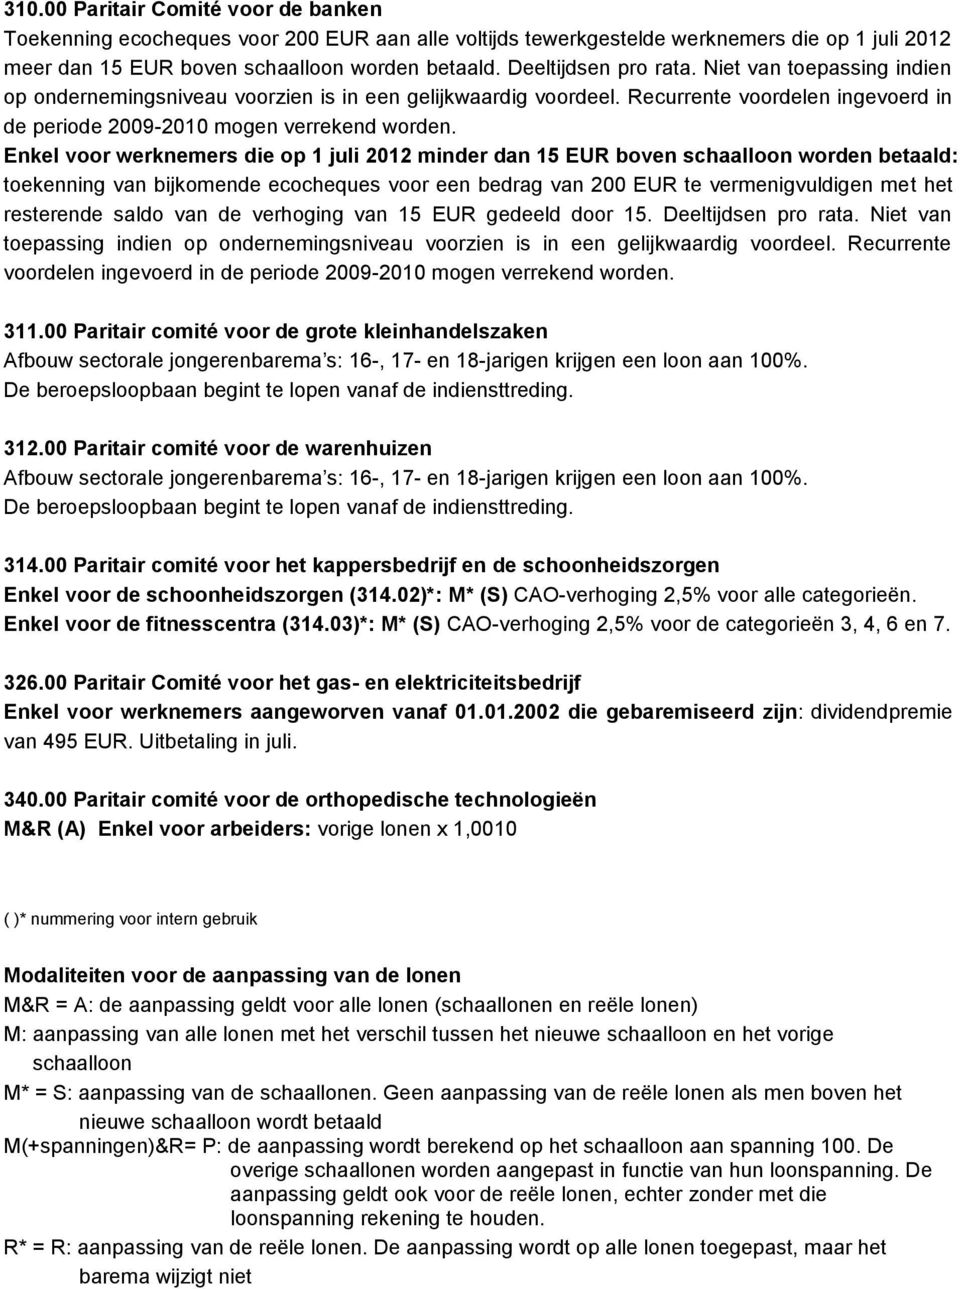 Enkel voor werknemers die op 1 juli 2012 minder dan 15 EUR boven schaalloon worden betaald: toekenning van bijkomende ecocheques voor een bedrag van 200 EUR te vermenigvuldigen met het resterende